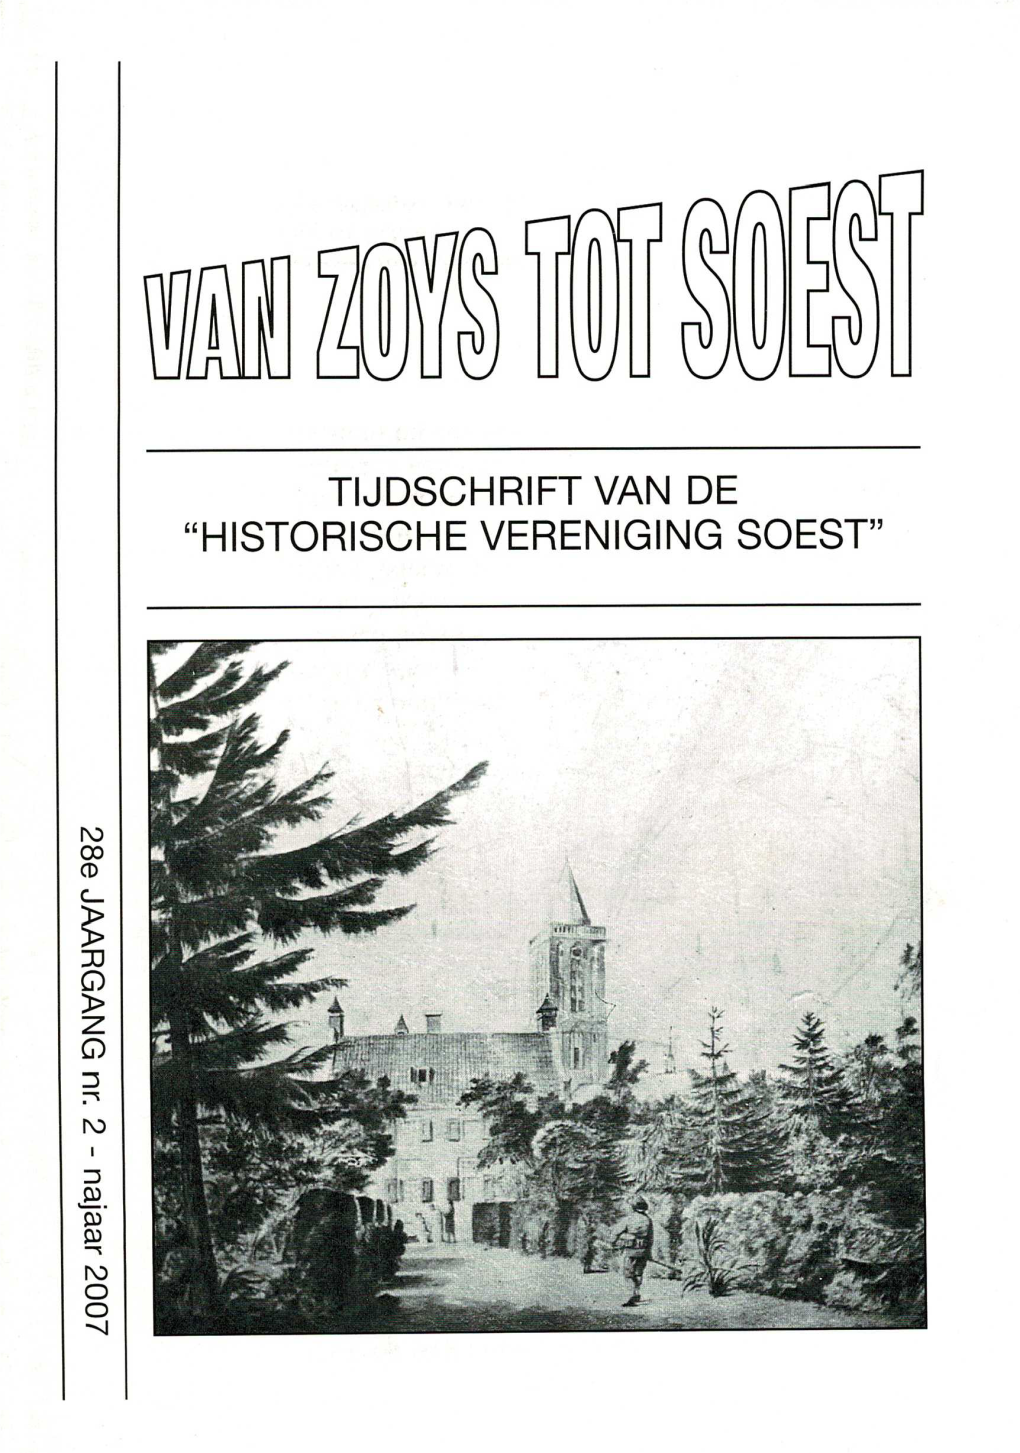 Historische Vereniging Soest"